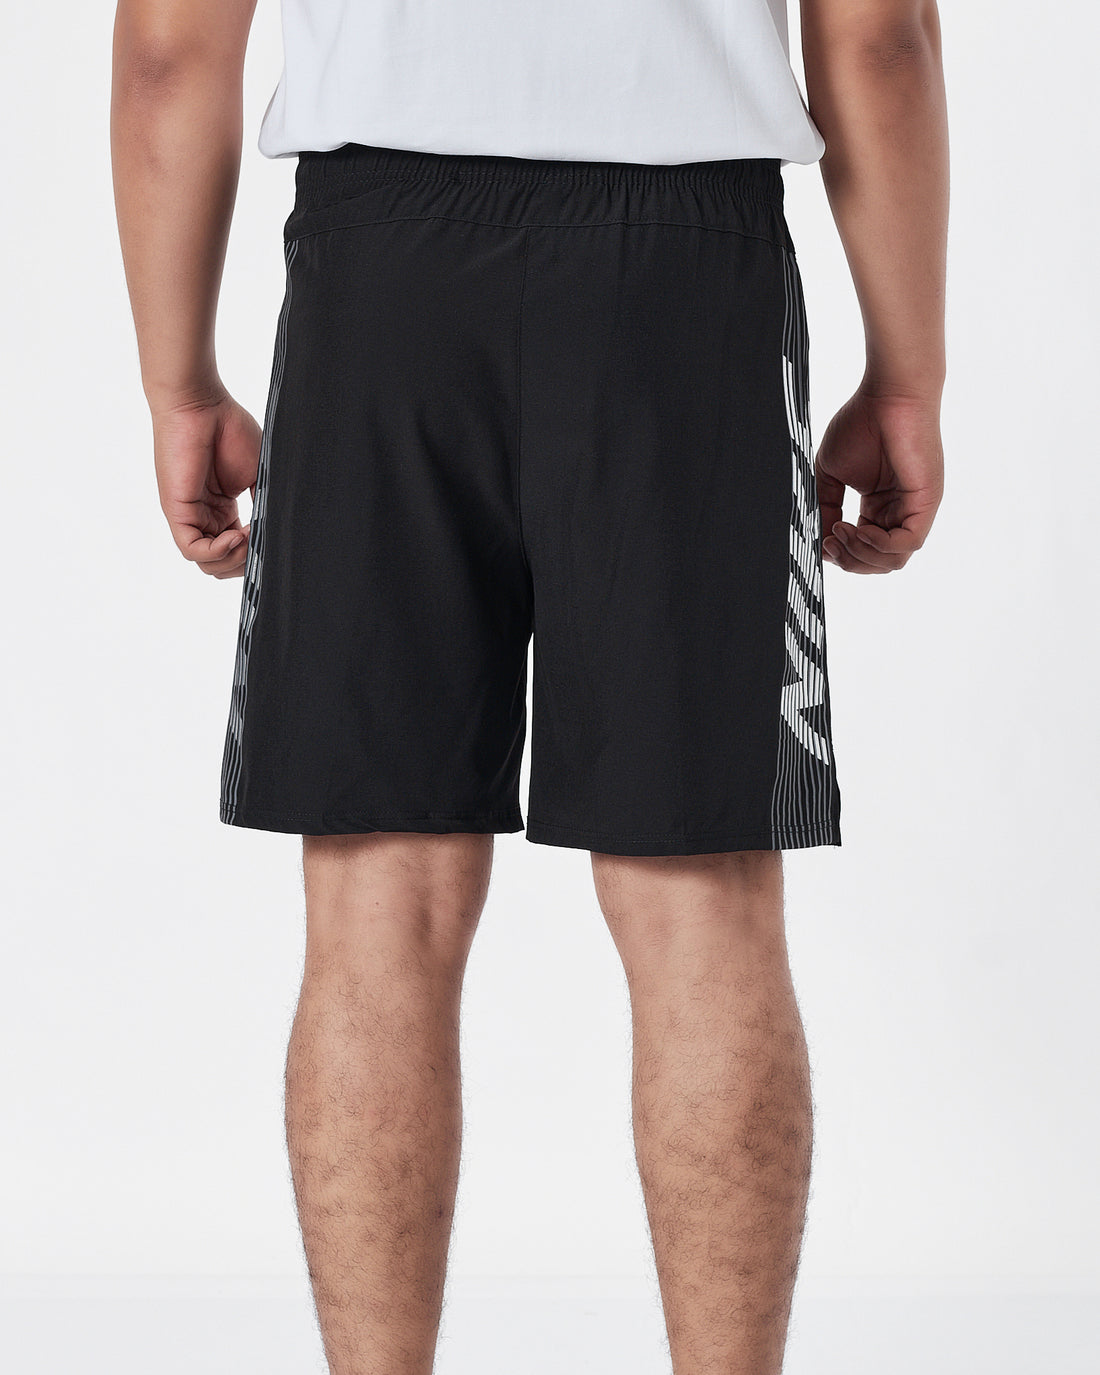 NIK Side Striped Logo Vertical Men Black Track Shorts 12.90